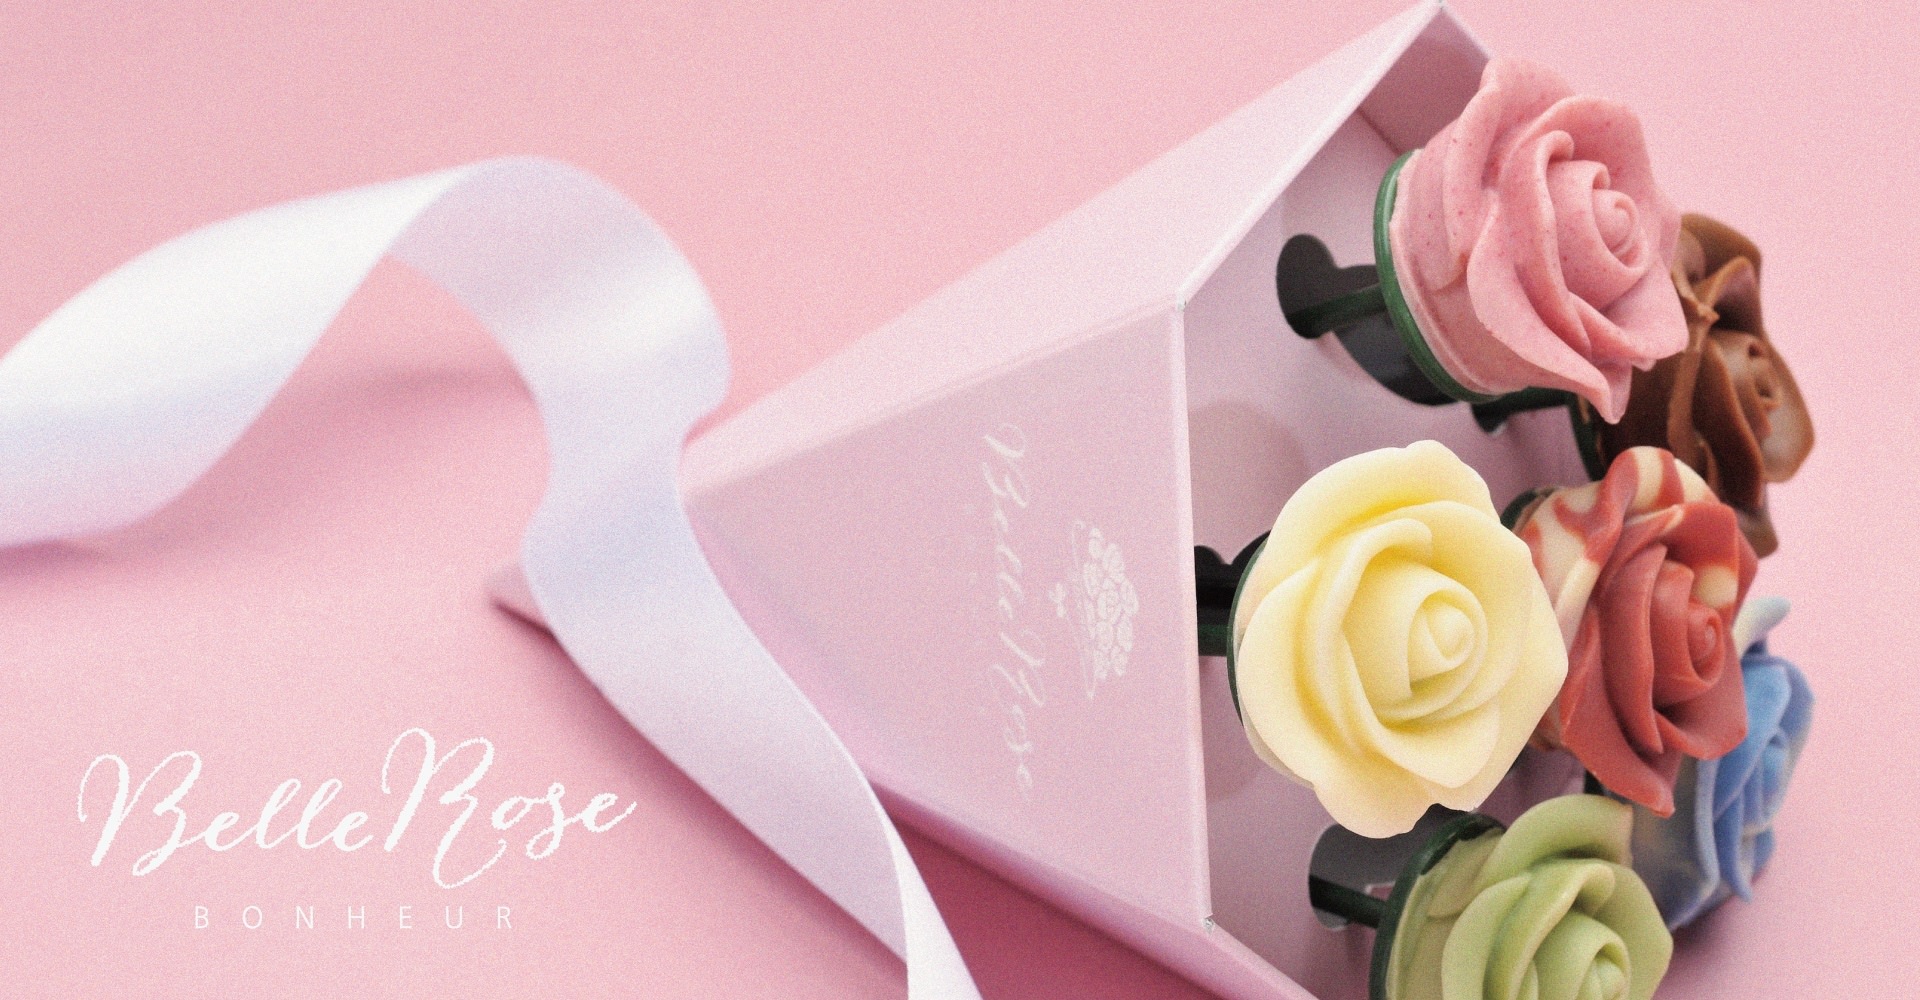 薔薇の花束のチョコレート「ベルローズ・ボヌール」　
12/7よりオンラインショップをオープン！
オープンを記念しオンラインショップ限定商品を発売